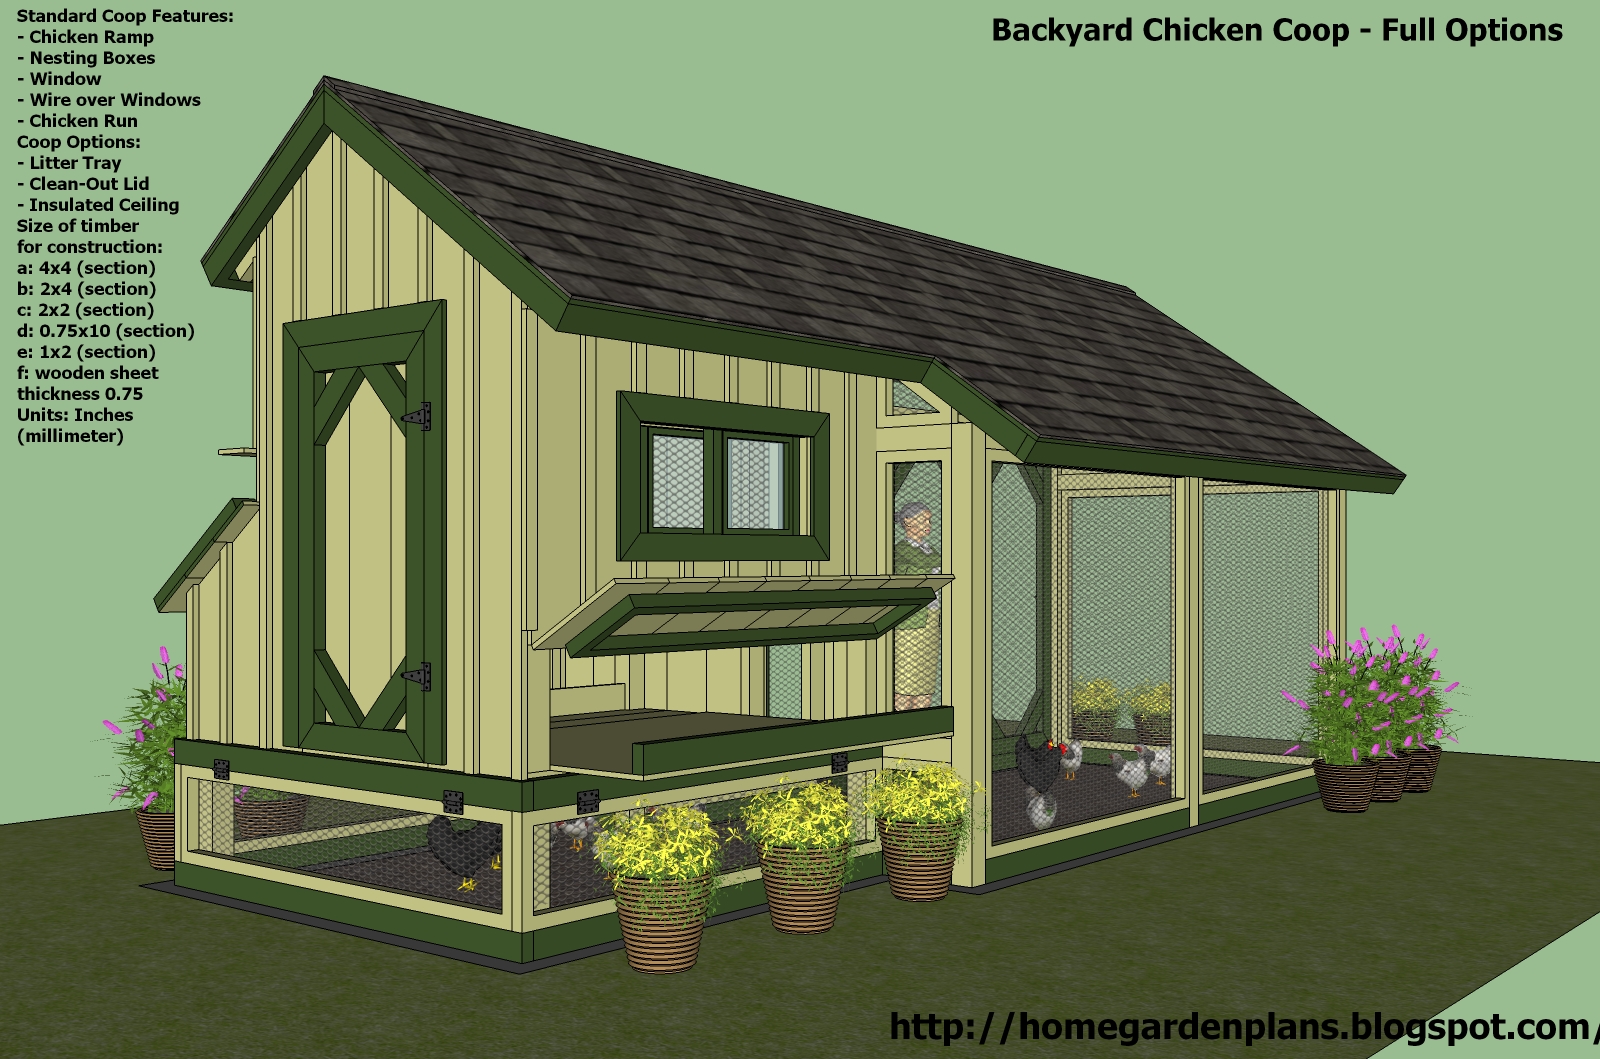 garden plans: M200 - Chicken Coop Plans Construction - Chicken Coop ...